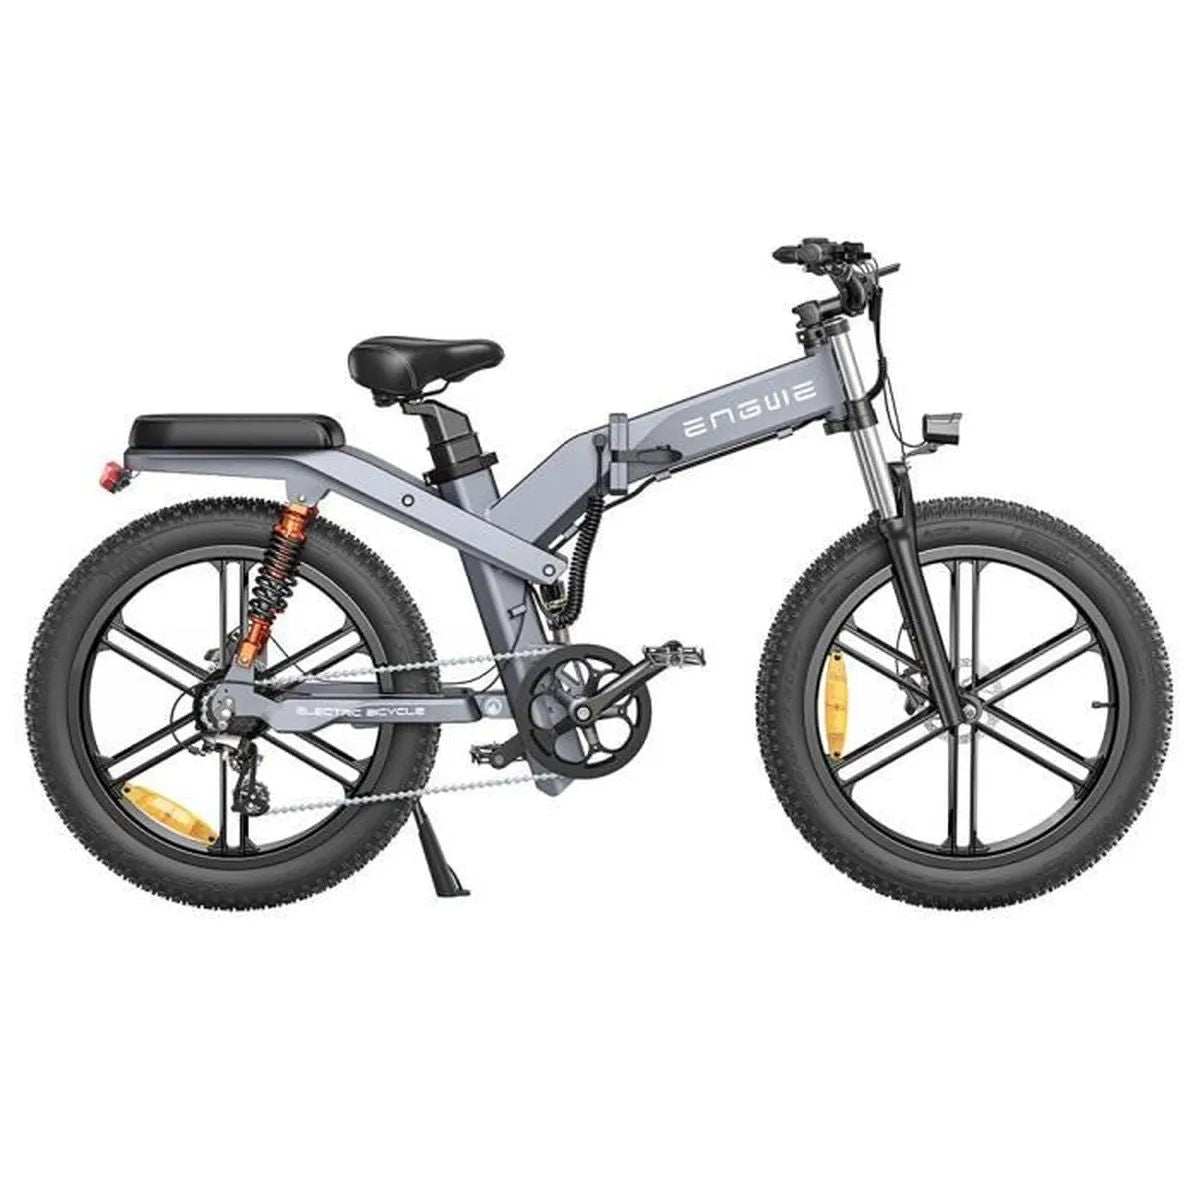 ENGWE X26 29.2AH - Potente bicicleta elétrica | Autonomia de 90KM | Disco de freio | Cor cinza